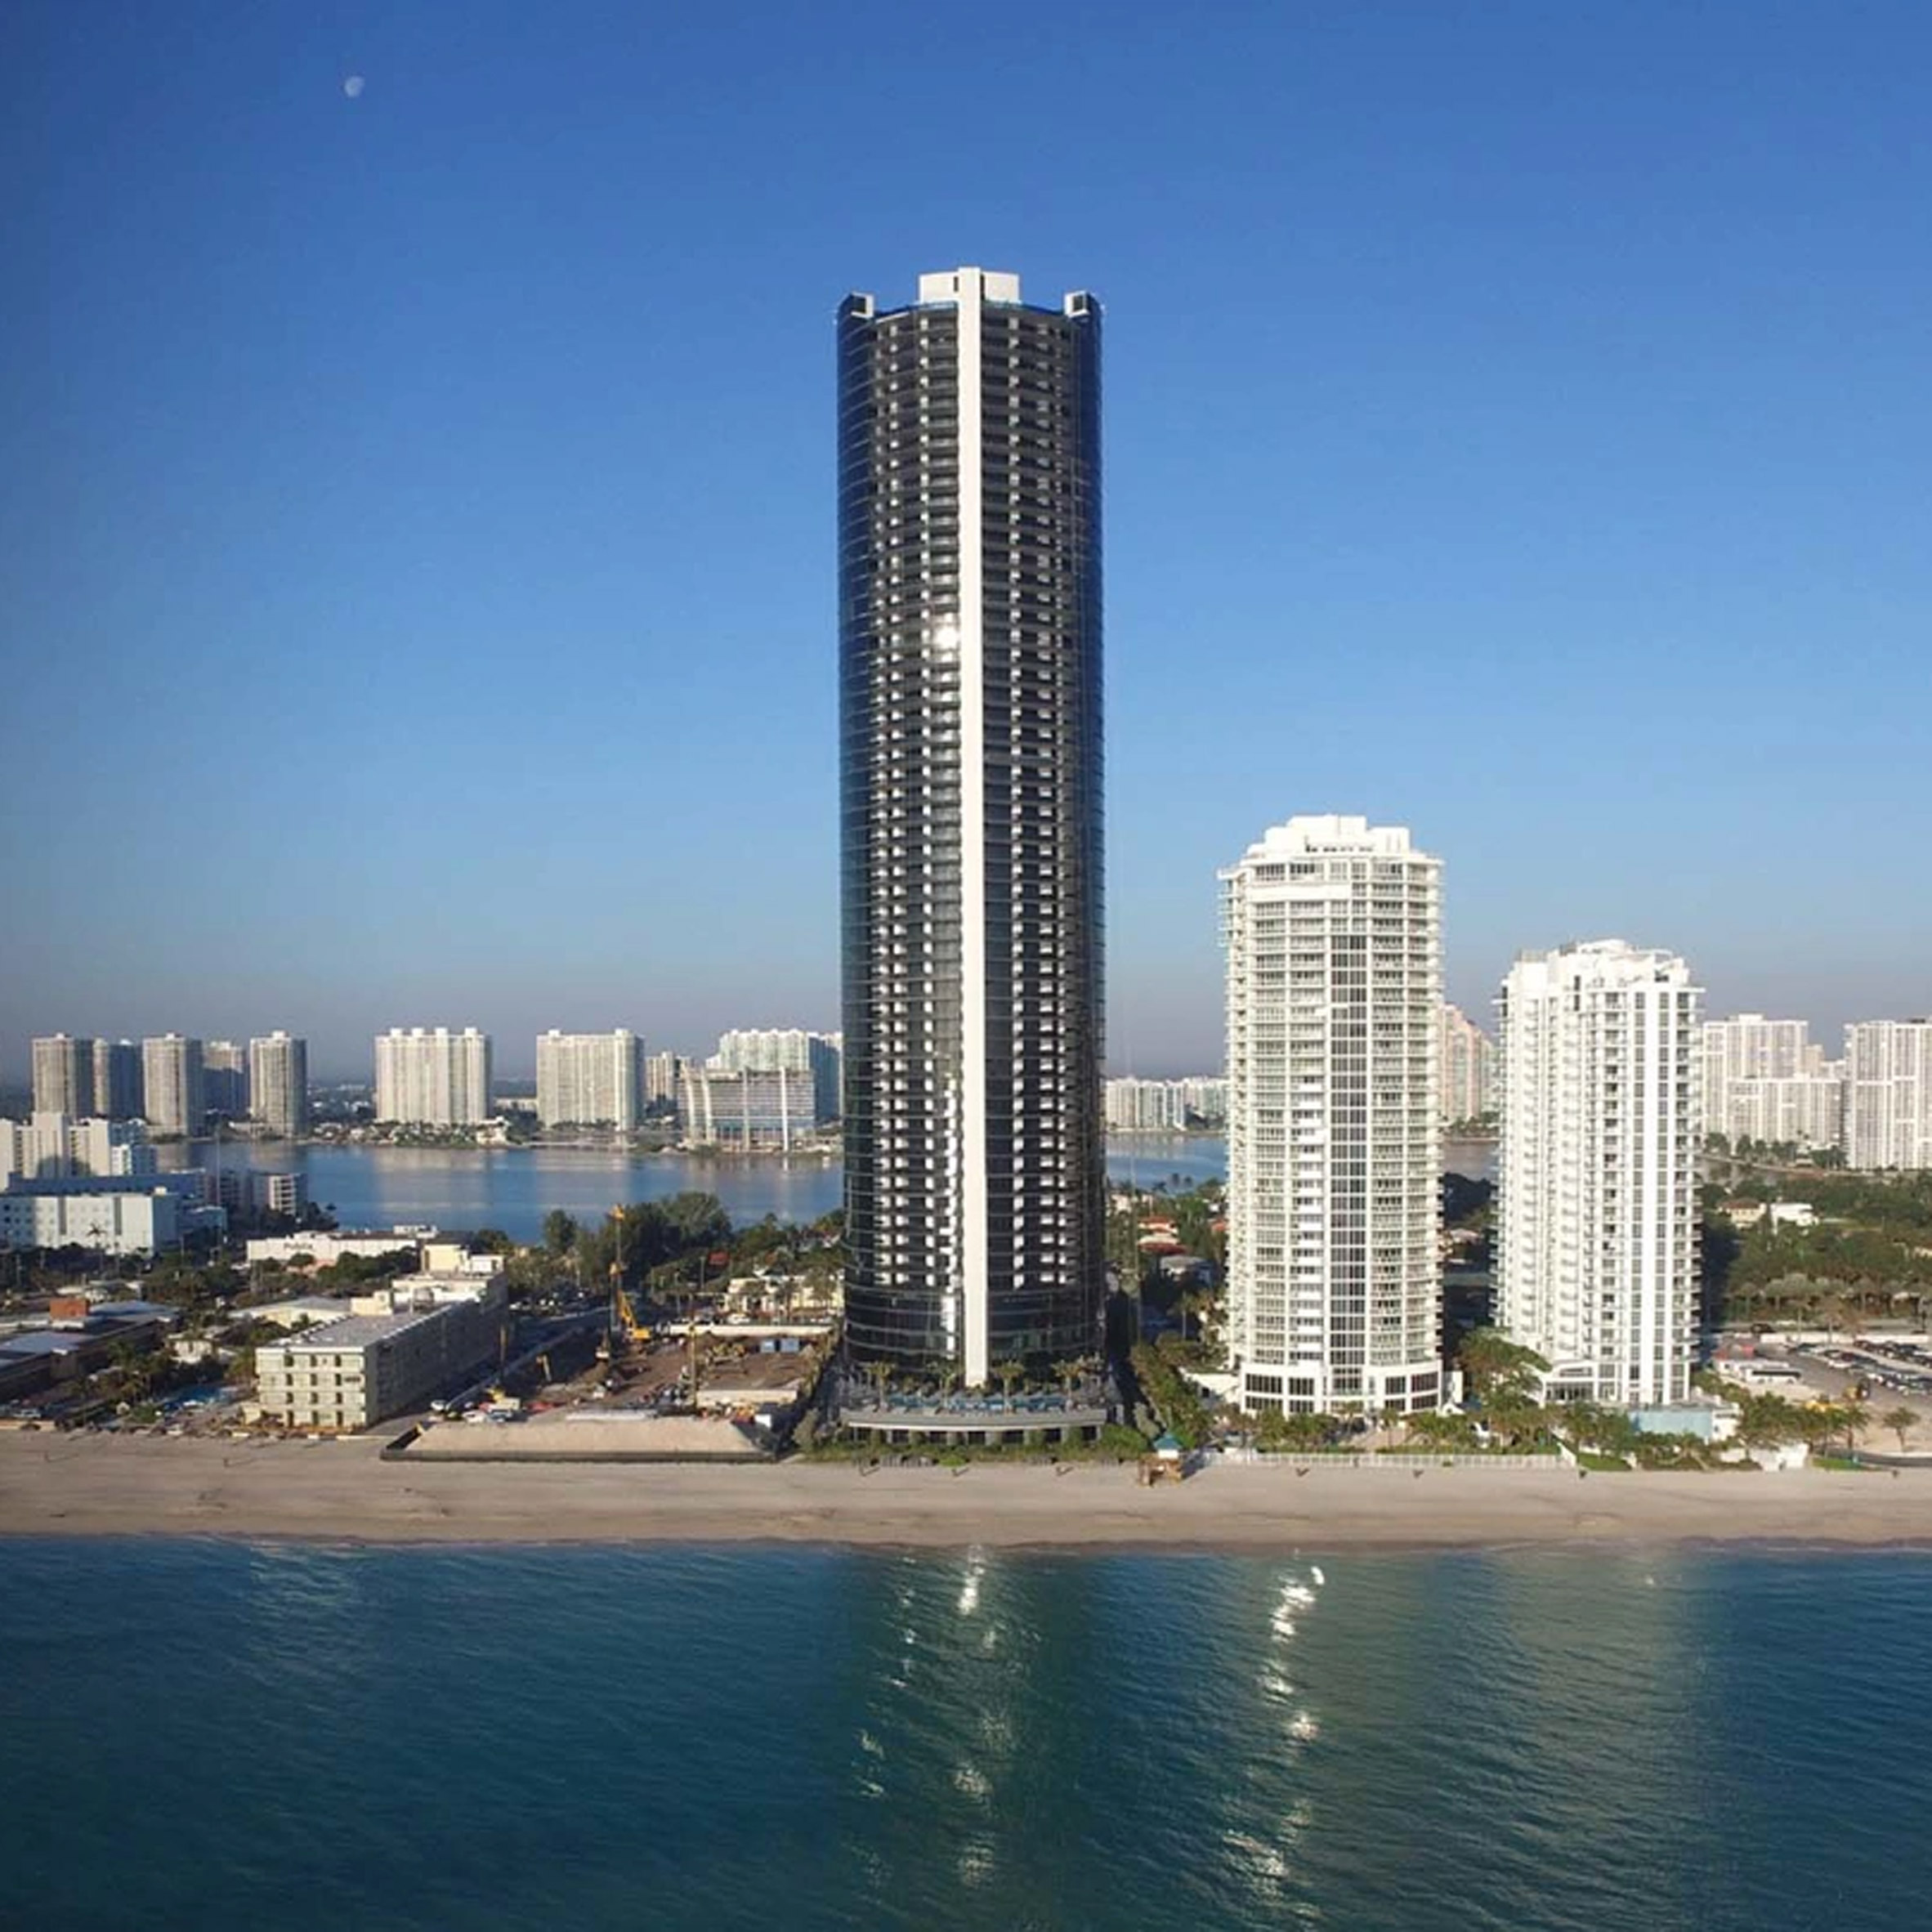 Porsche Design Tower Miami, USA, by Porsche and Dezer Development